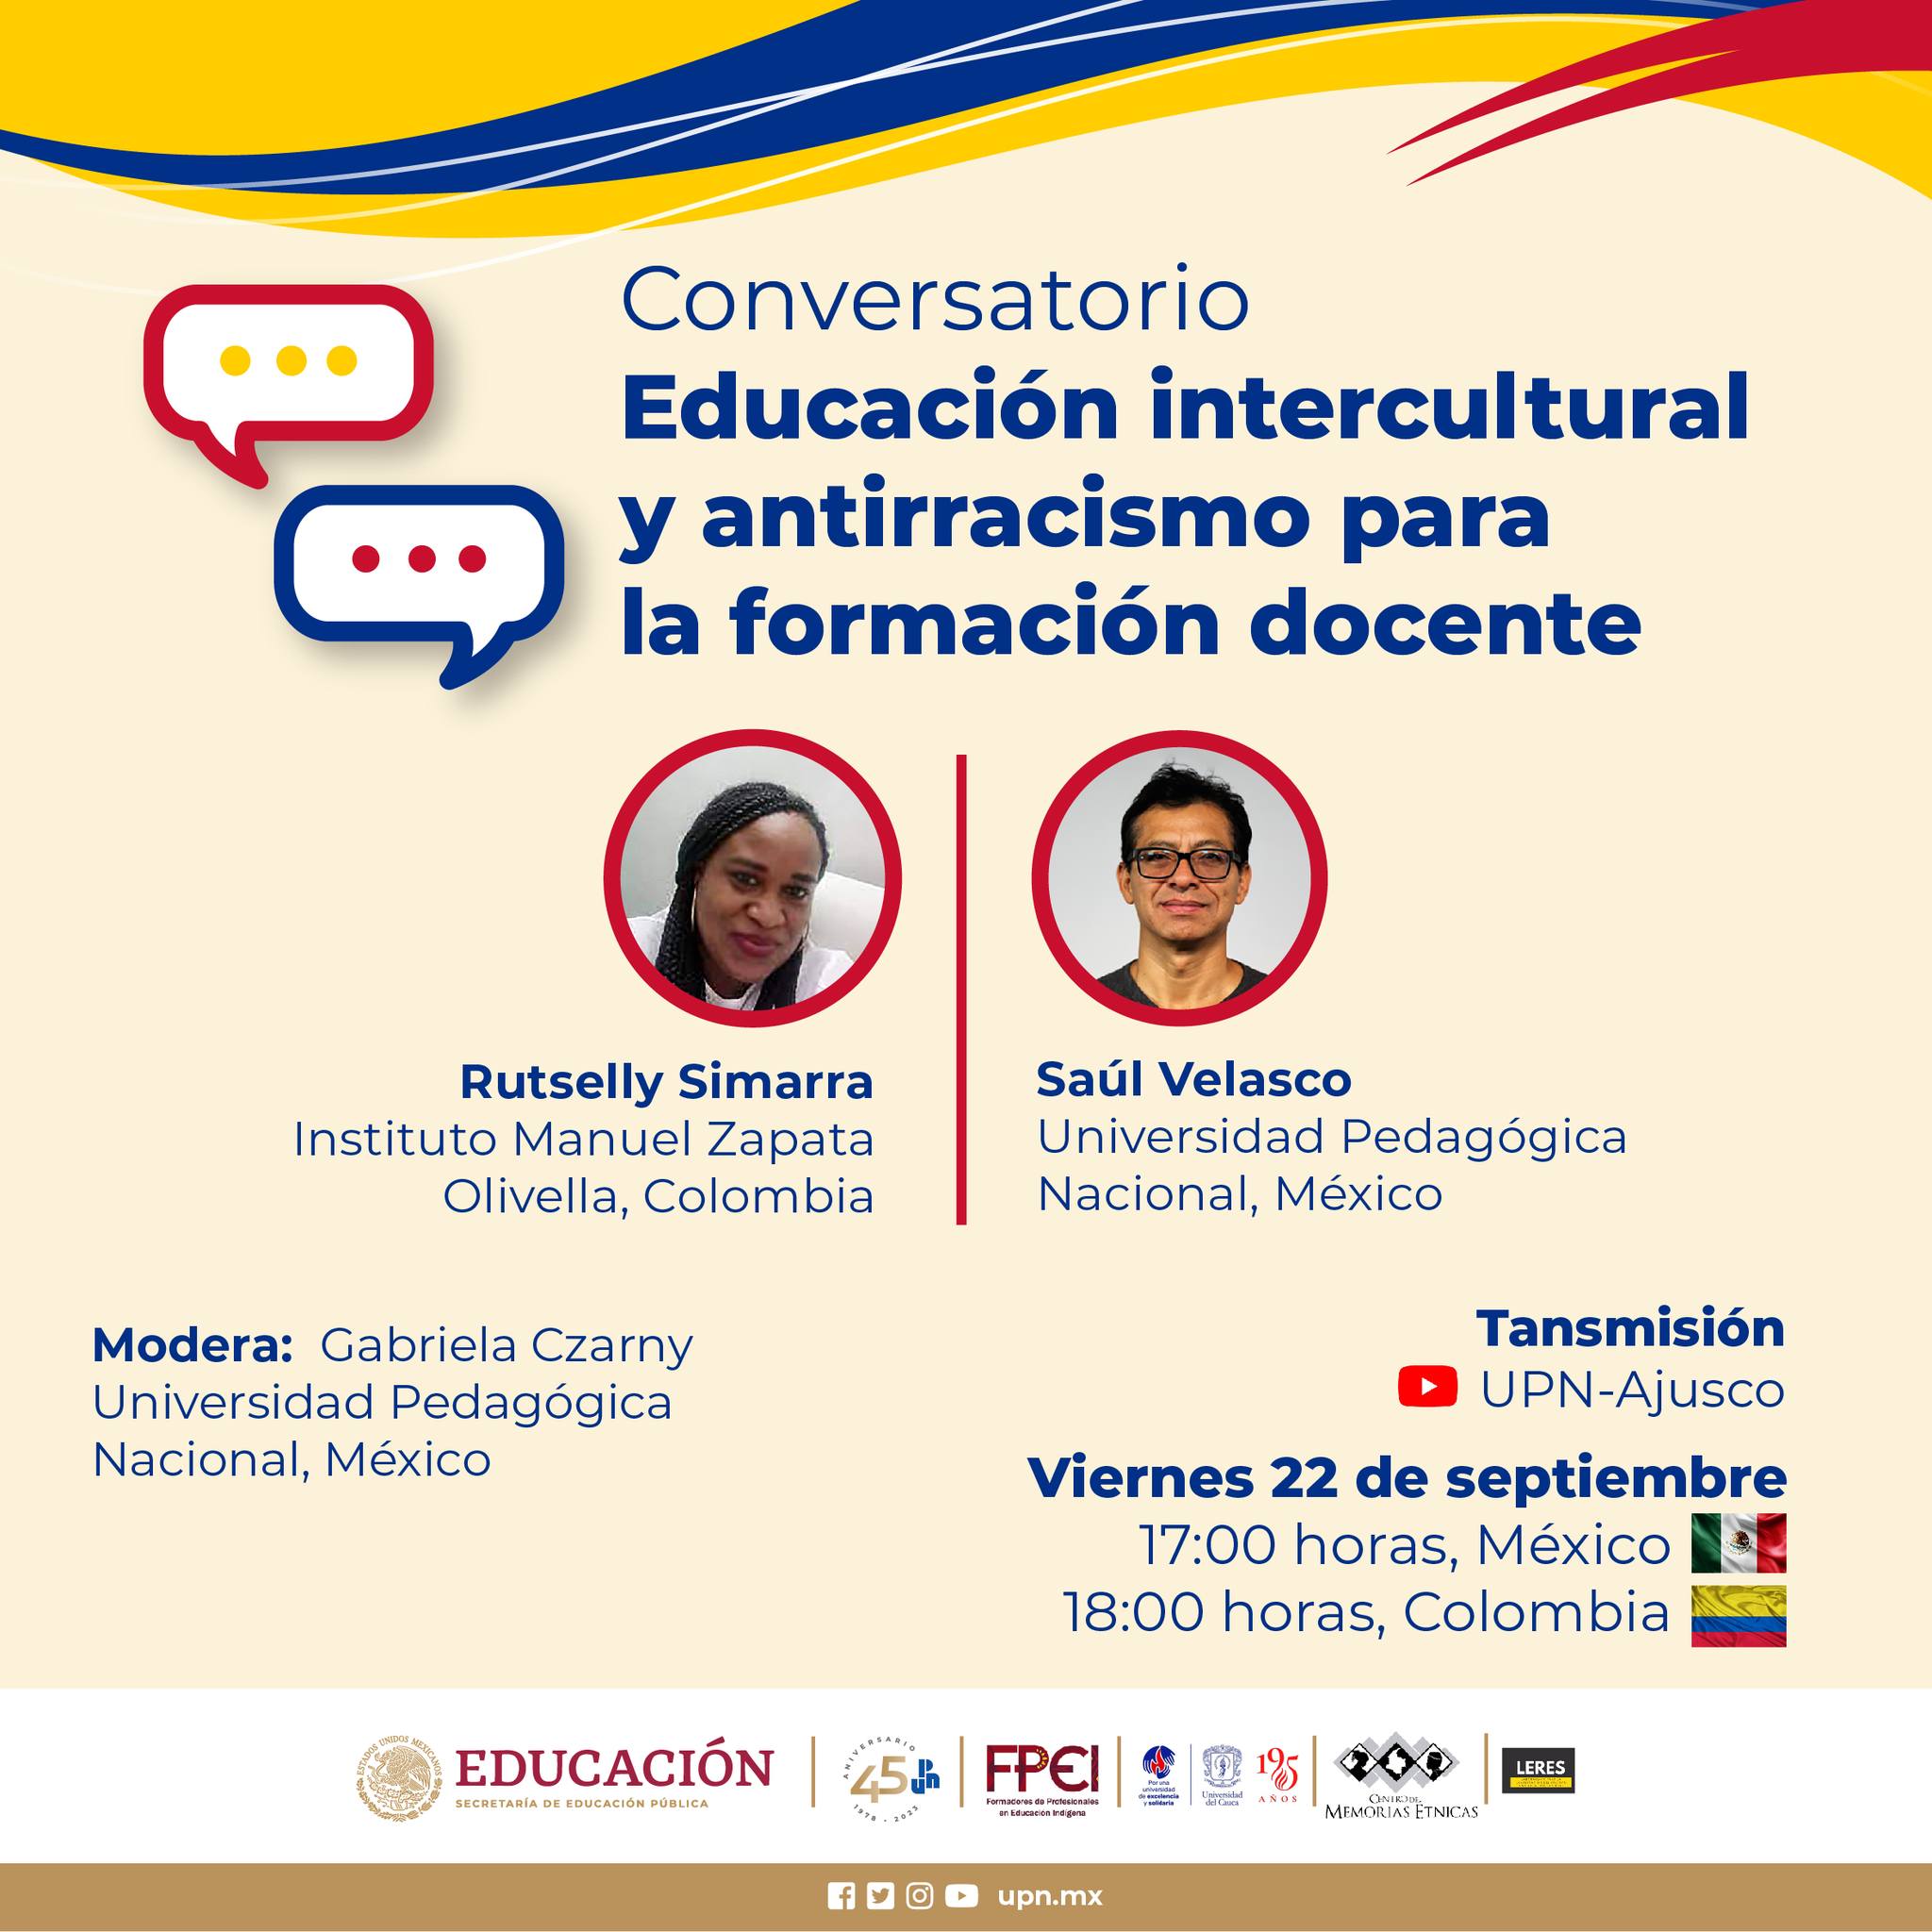 Módulo 3. Educación intercultural y antirracismo para la formación docente